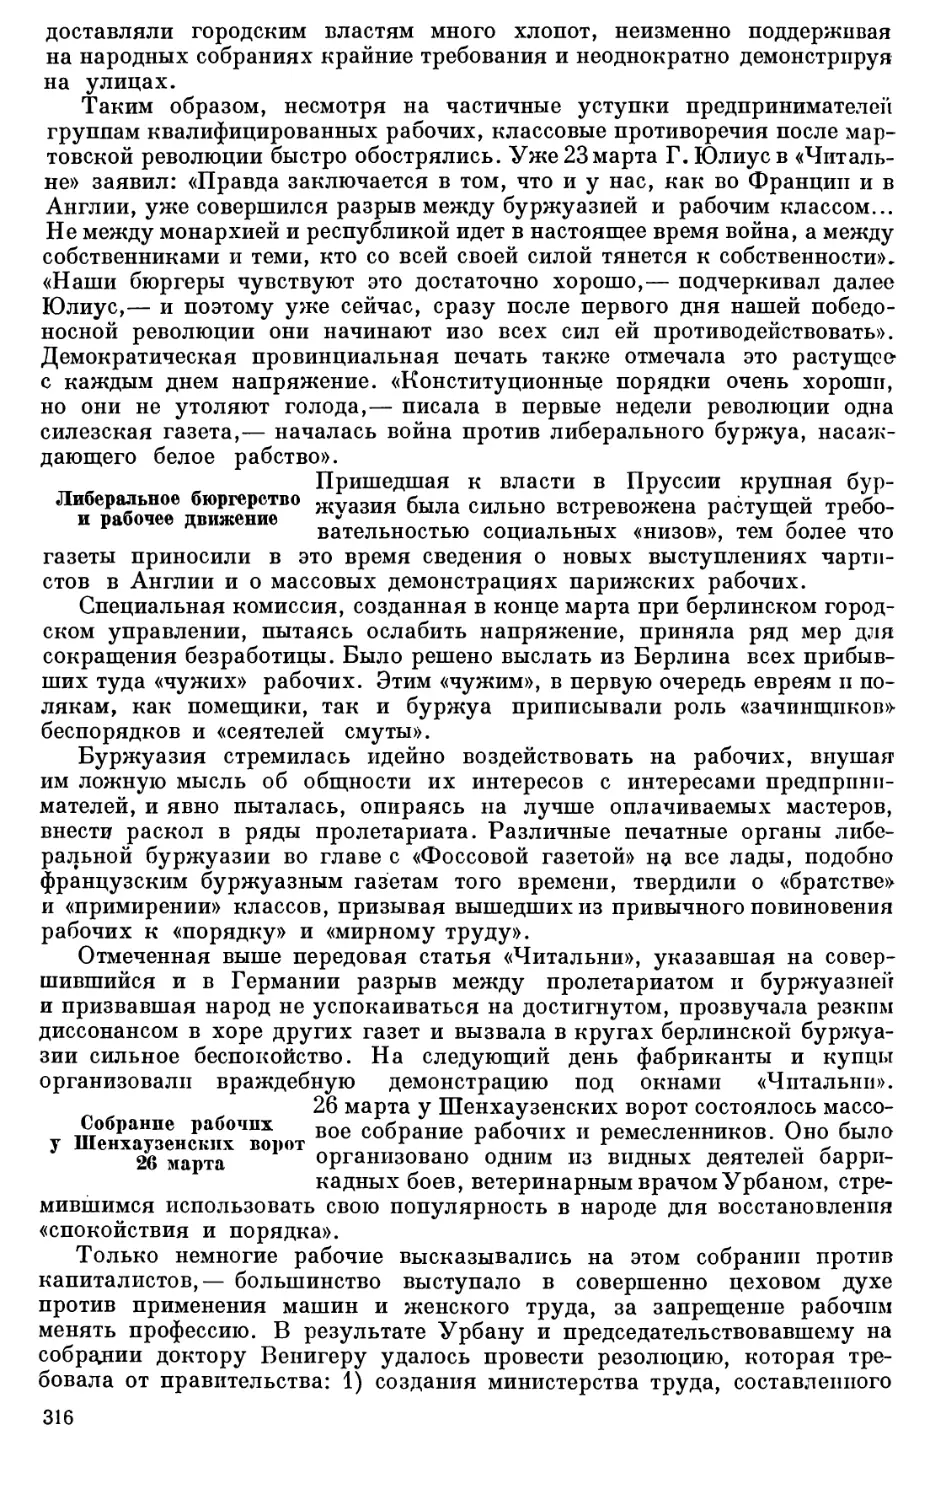 Планы военного командования в связи с подавлением Познанского восстания